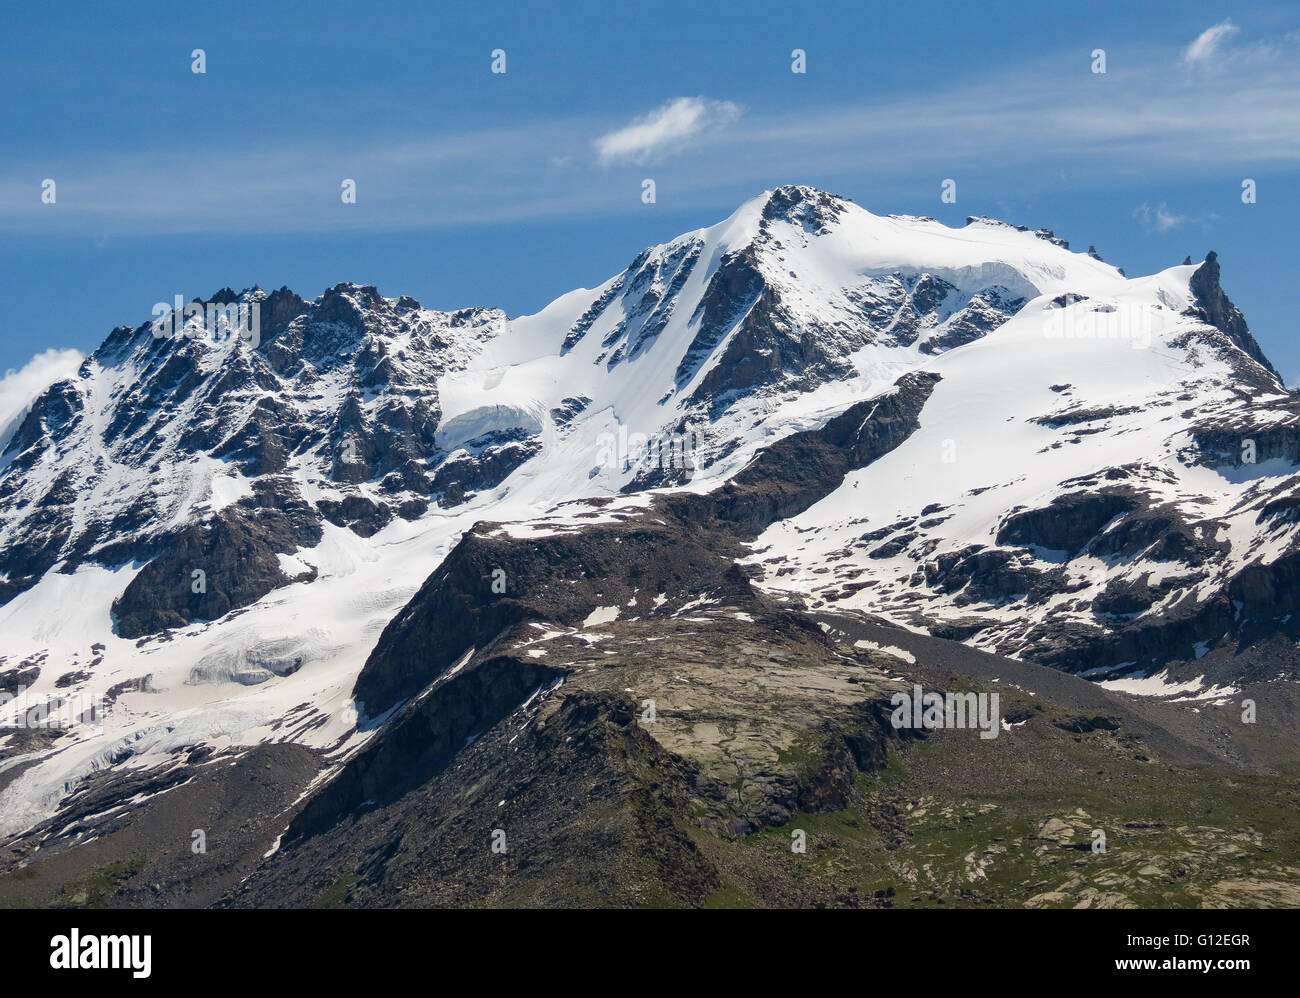 Le massif de montagne Gran Paradiso. Pic et glaciers. Val d'Aoste. Alpes italiennes. Europe. Banque D'Images